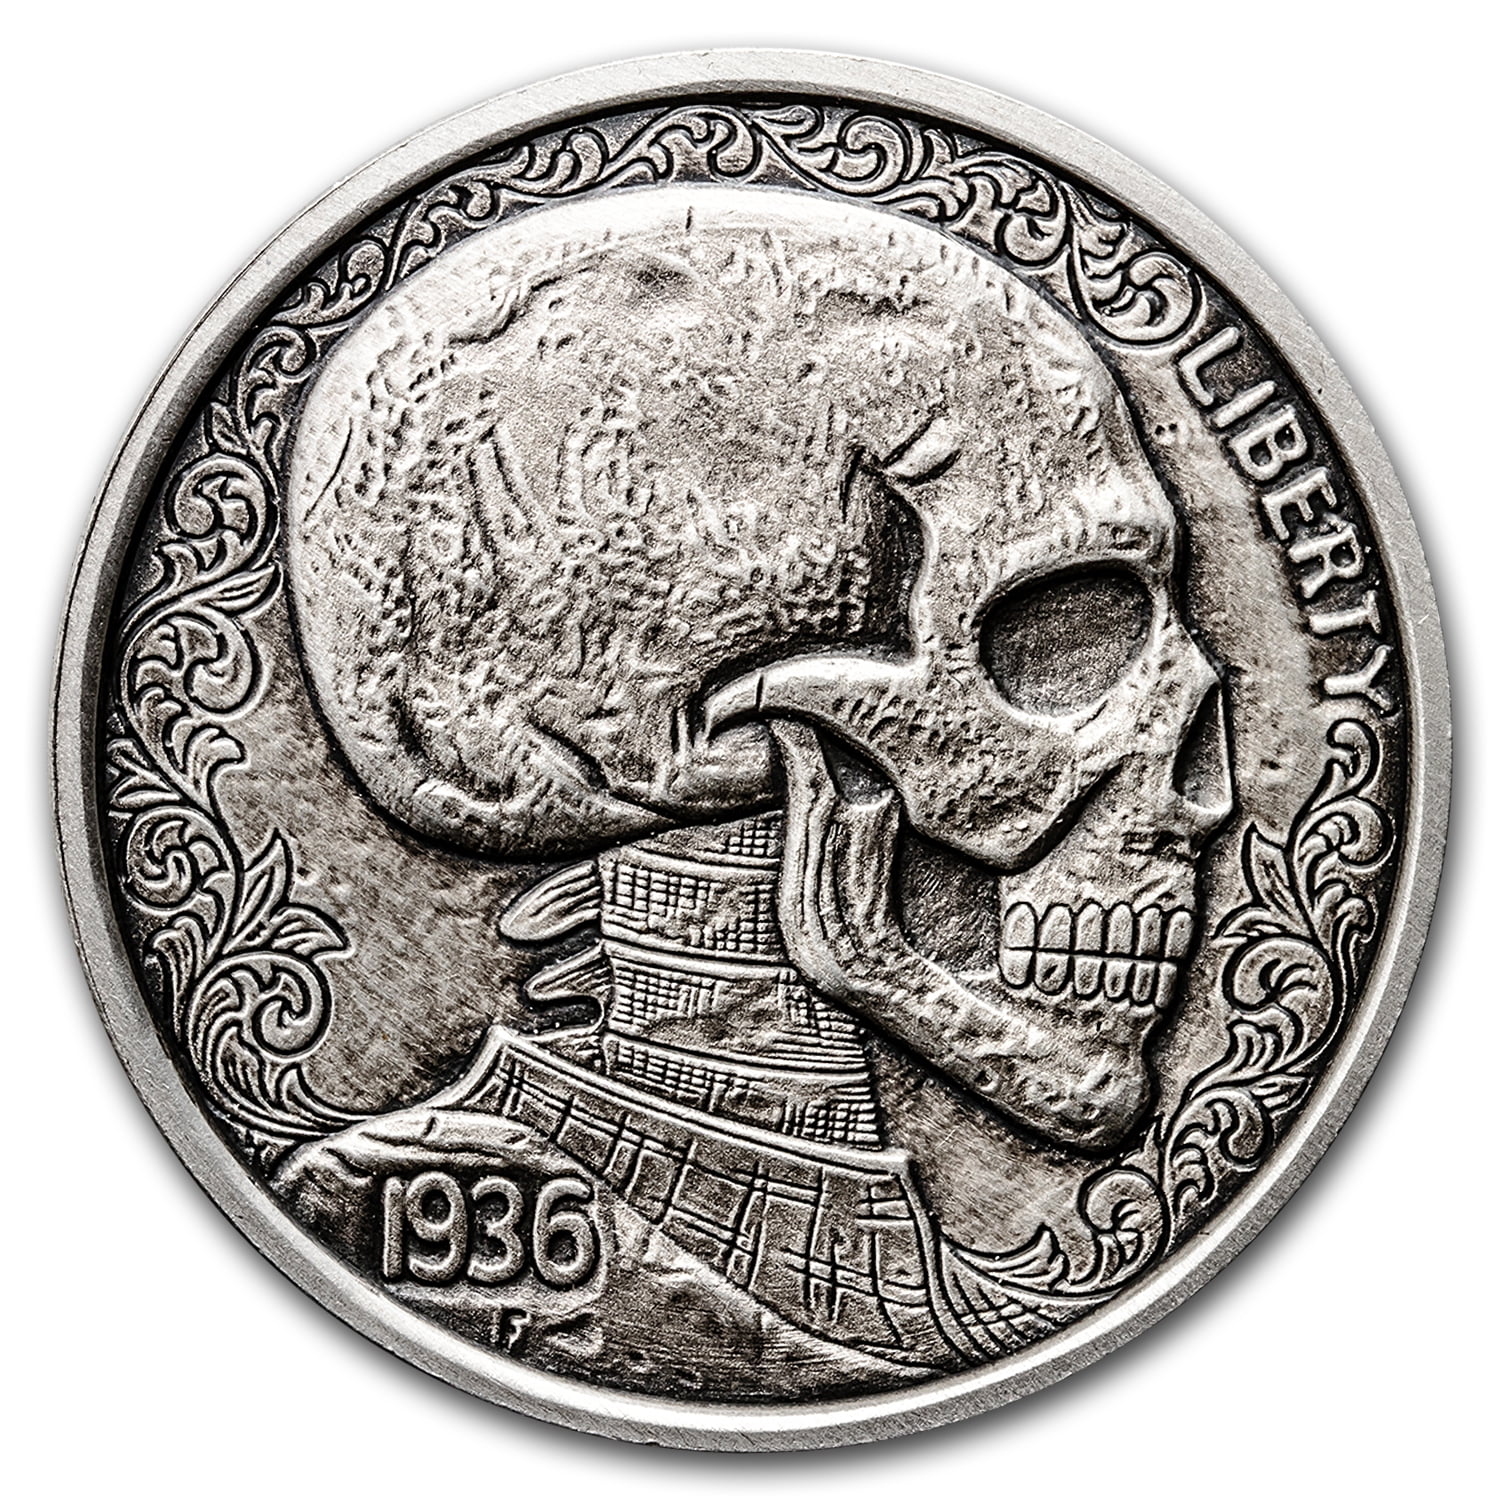 3 Skulls "Hobo Nickel" on Morgan Dollar Coin ** 